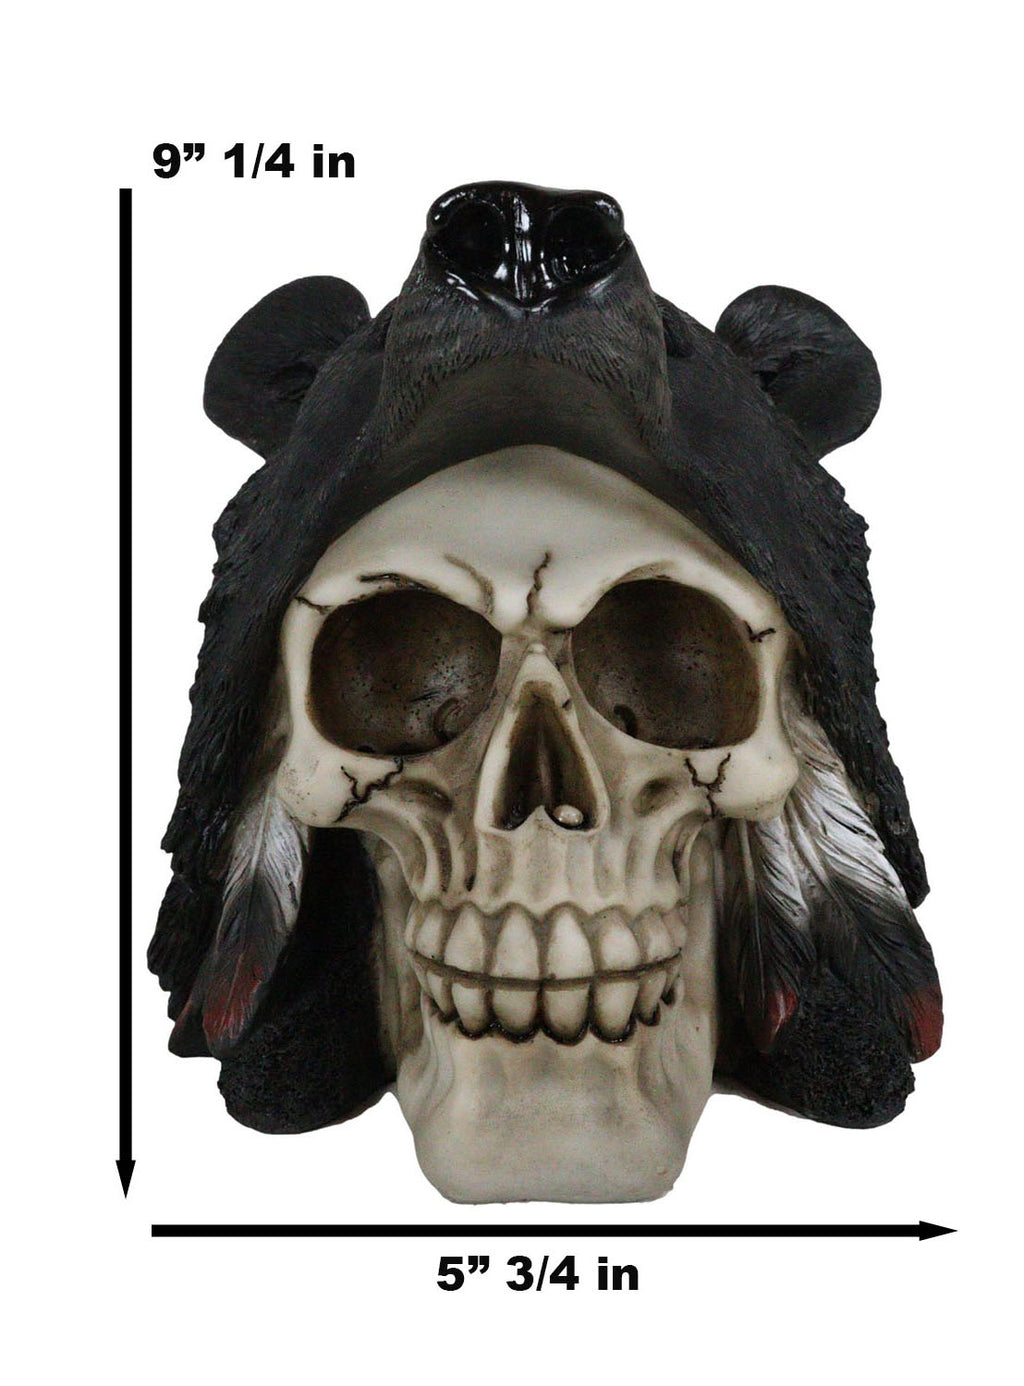 Warrior Skull Headpiece/ Decorative Skull